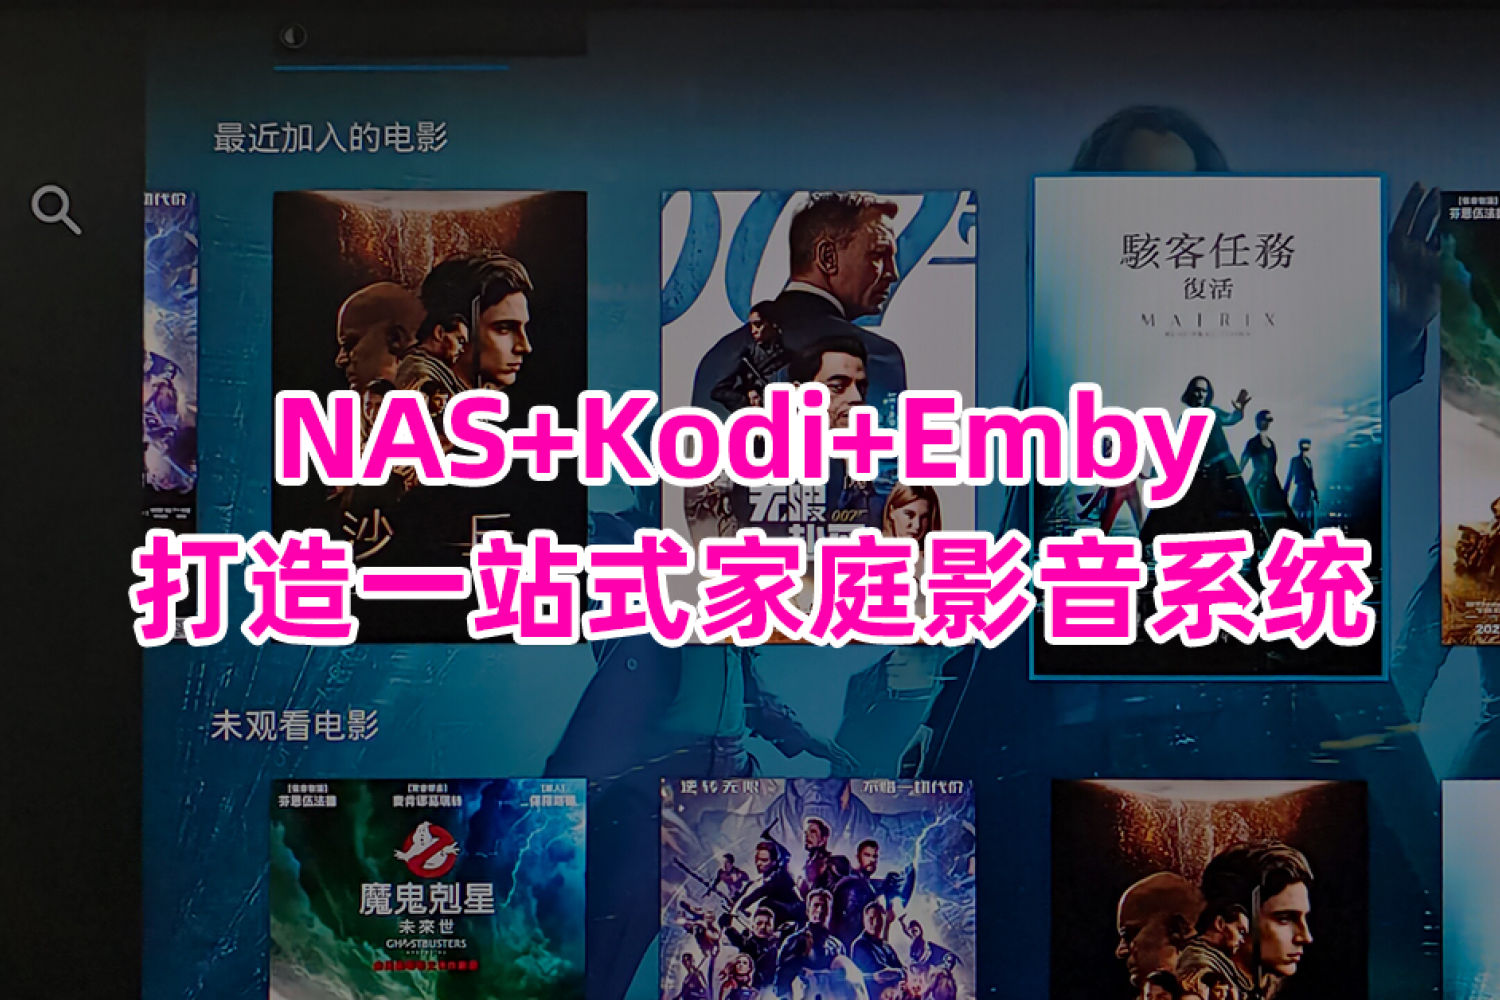 详解NAS+Kodi+Emby搭建一站式家庭影音系统